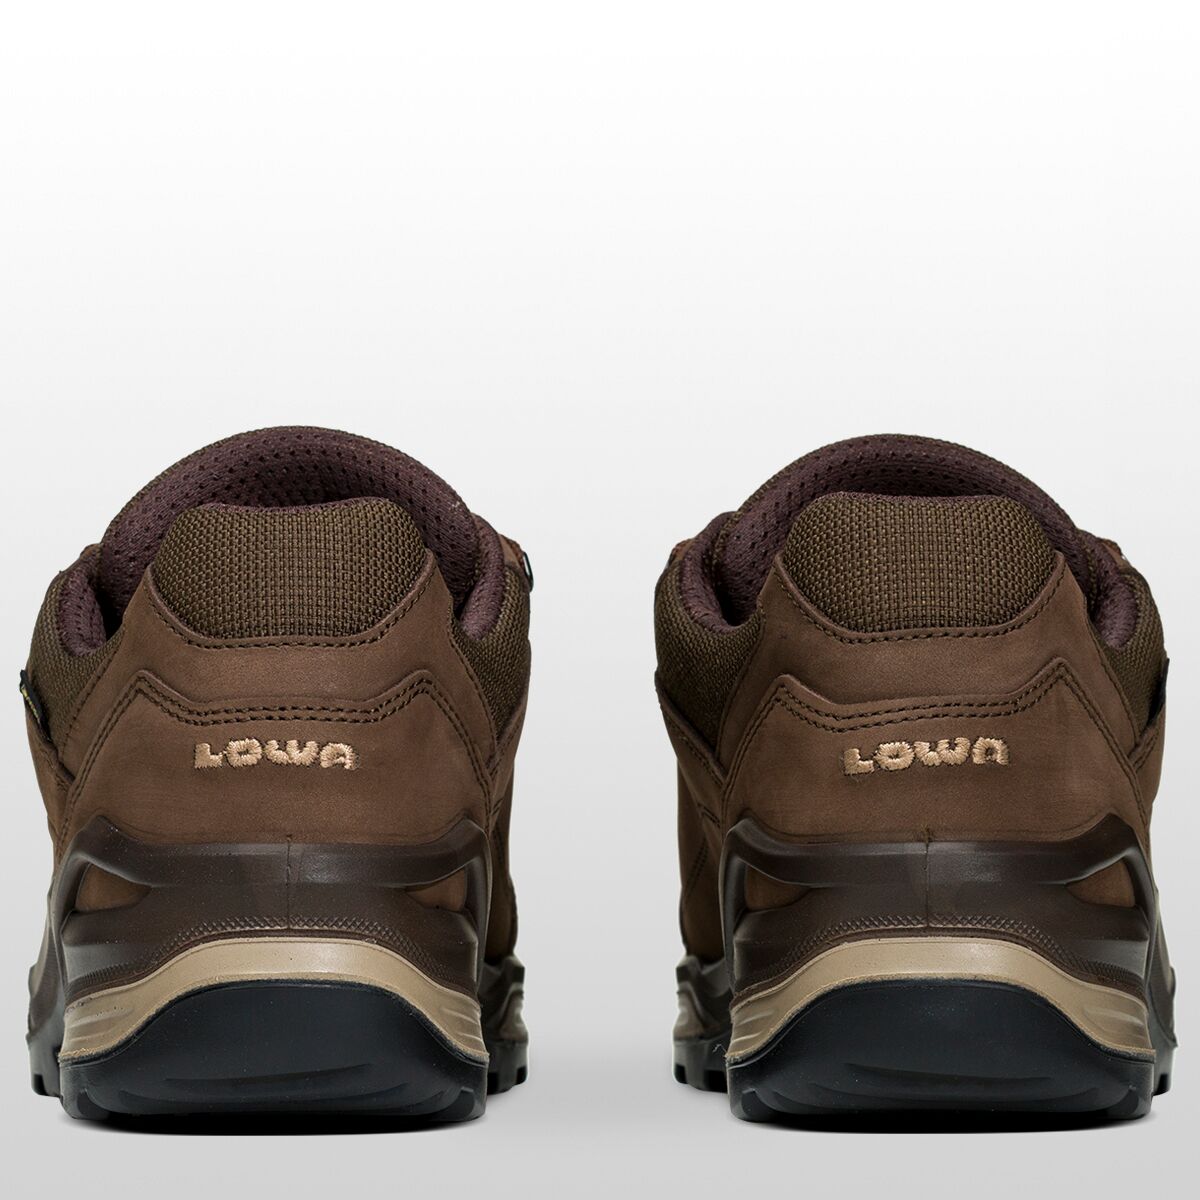 Veroveraar Vervorming Haarvaten Lowa Renegade GTX Lo Hiking Shoe - Men's - Footwear